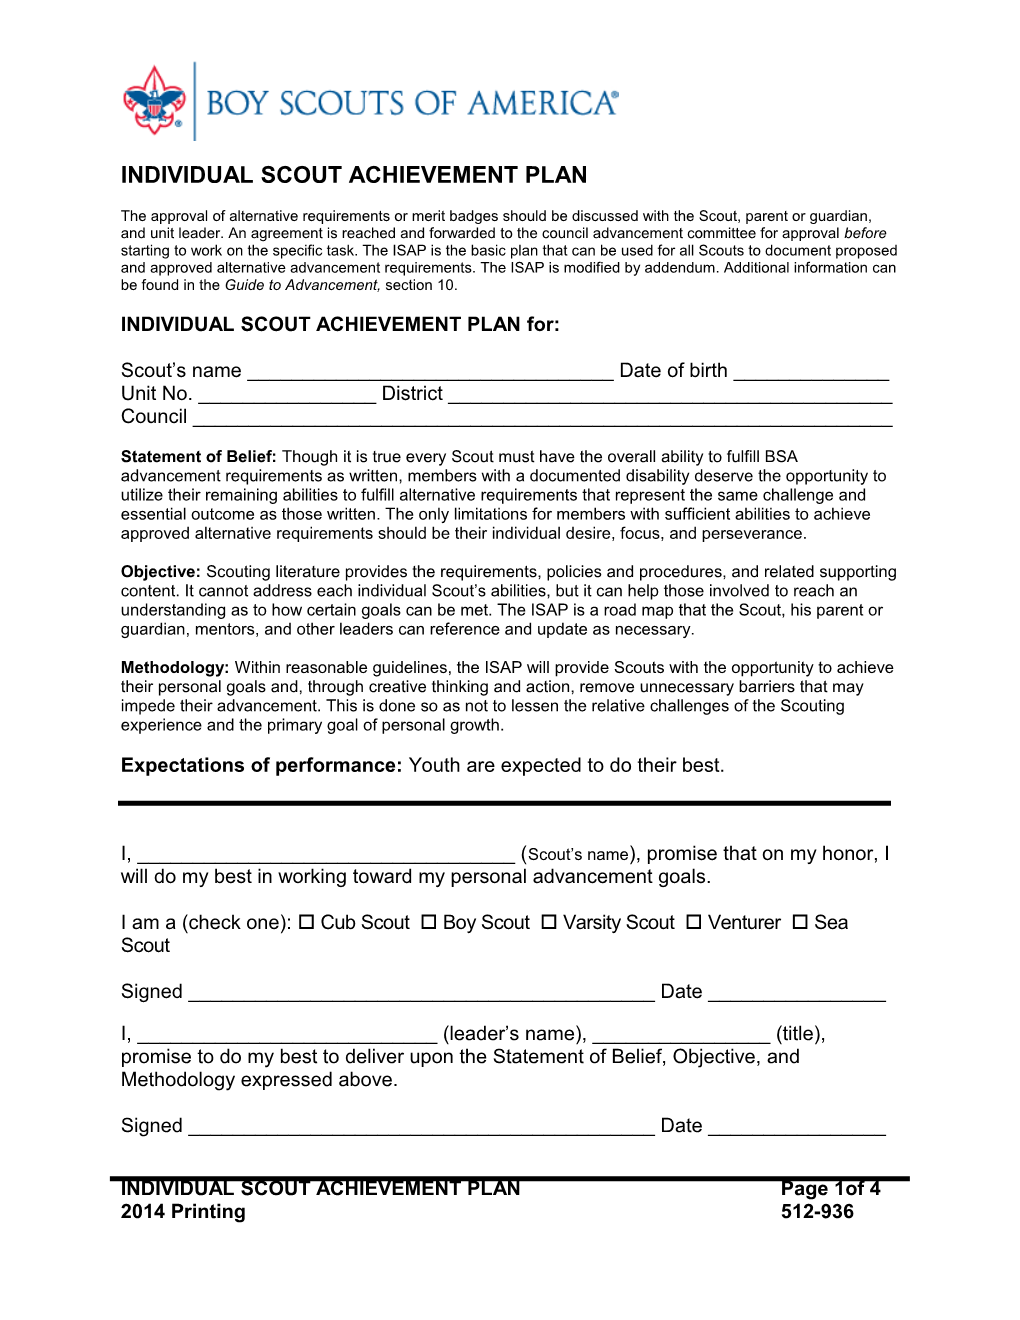 Individual Scout Achievement Plan